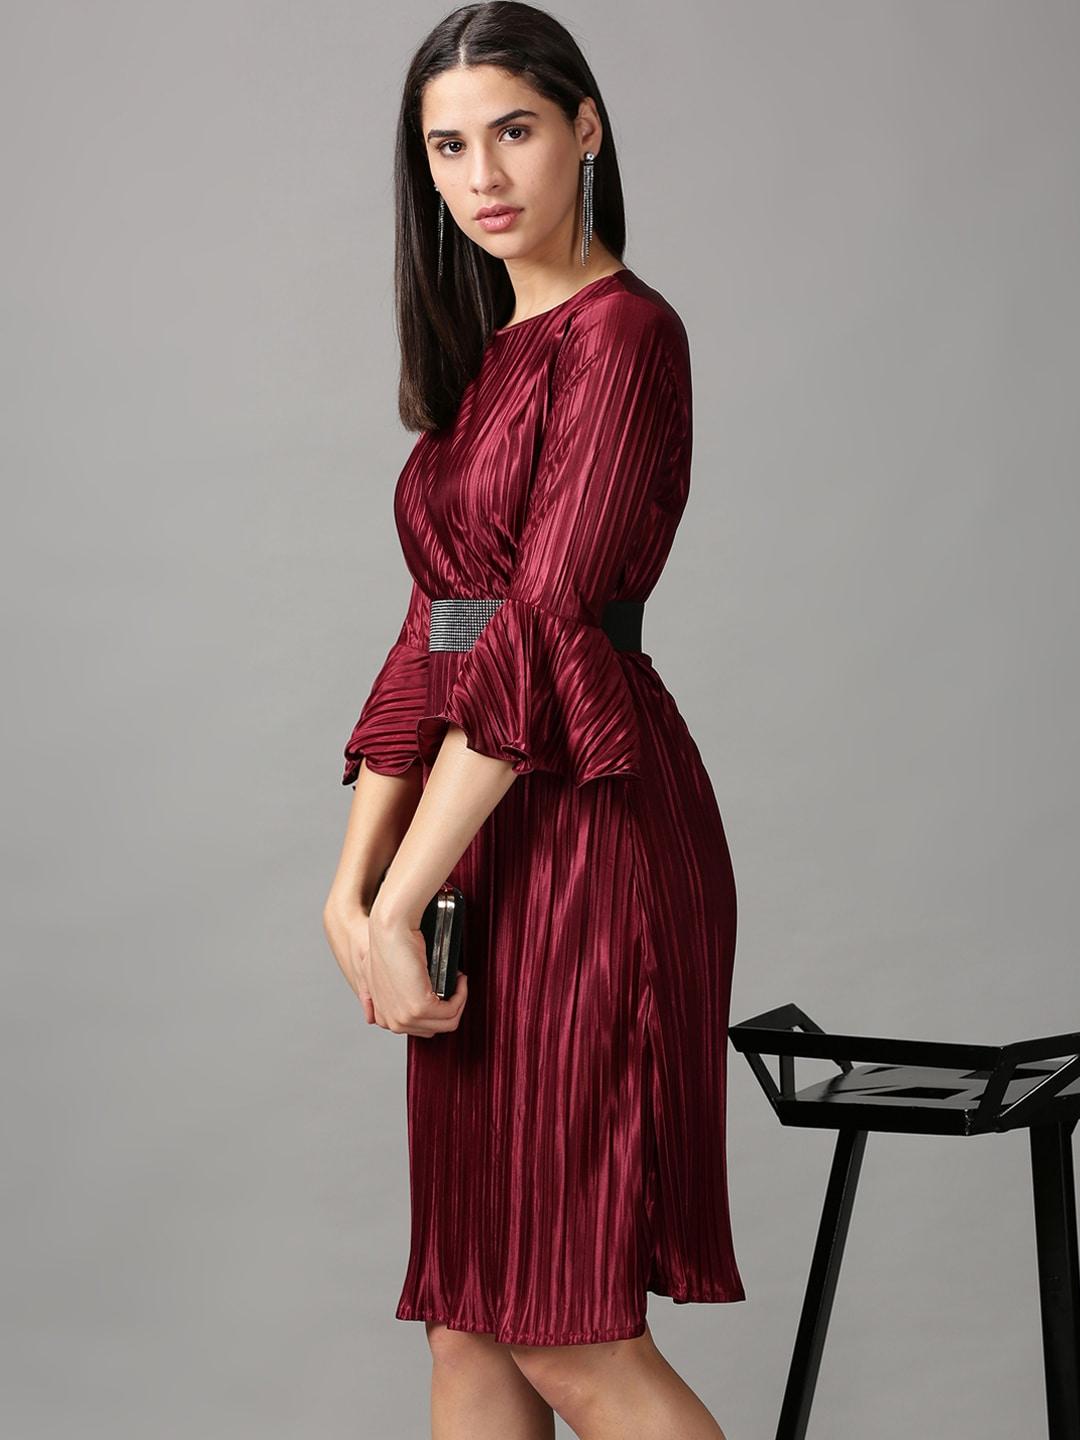 showoff-burgundy-striped-sheath-dress